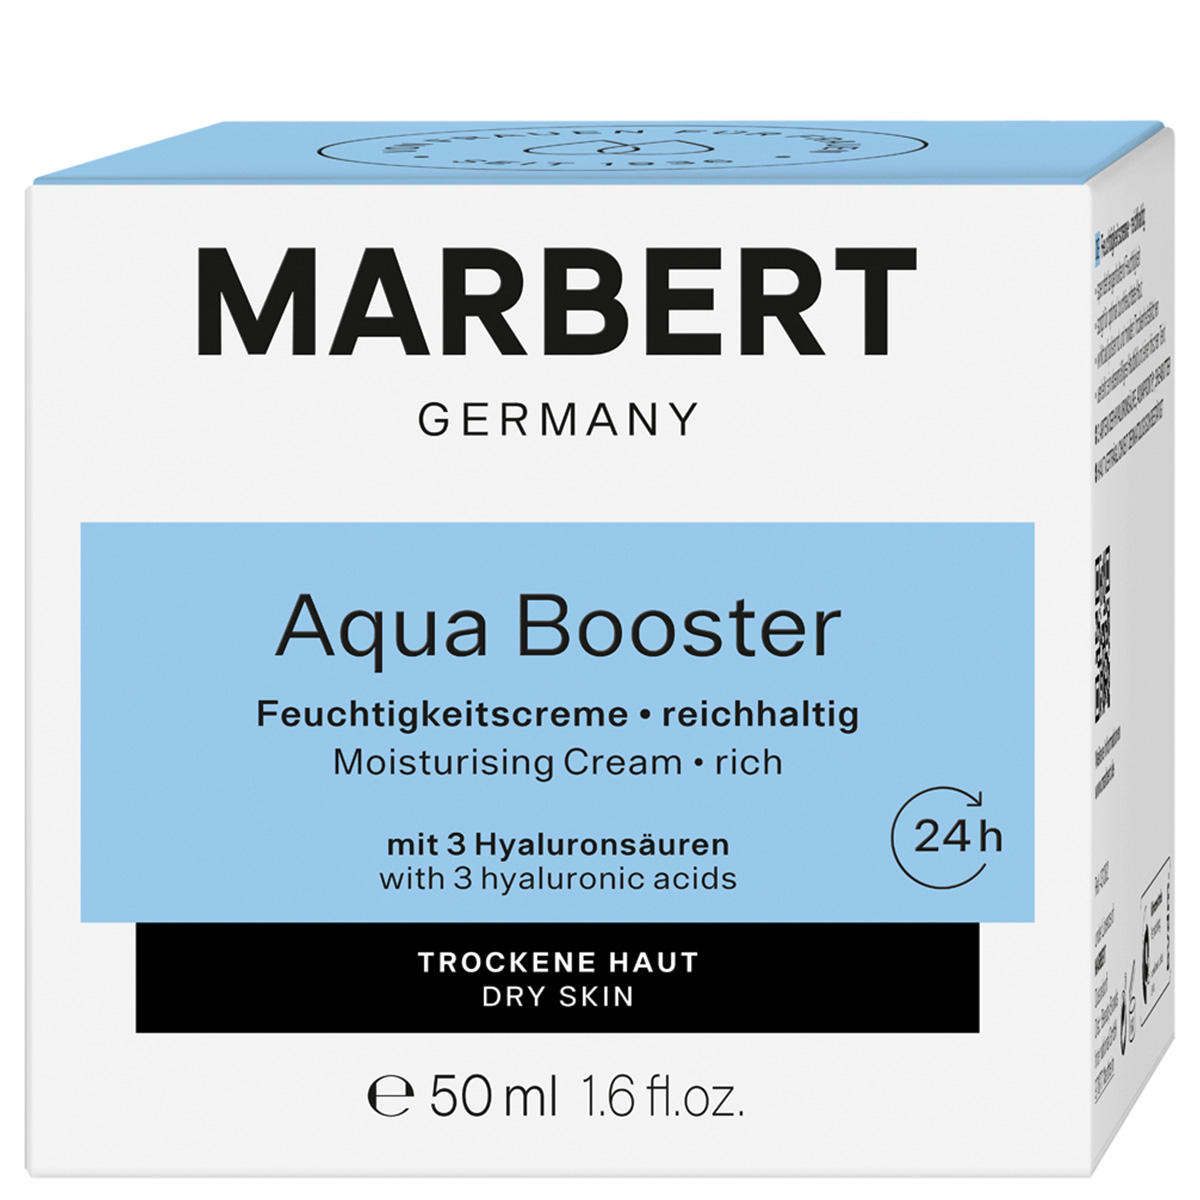 Marbert Aqua Booster Feuchtigkeitscreme reichhaltig 50 ml - 2